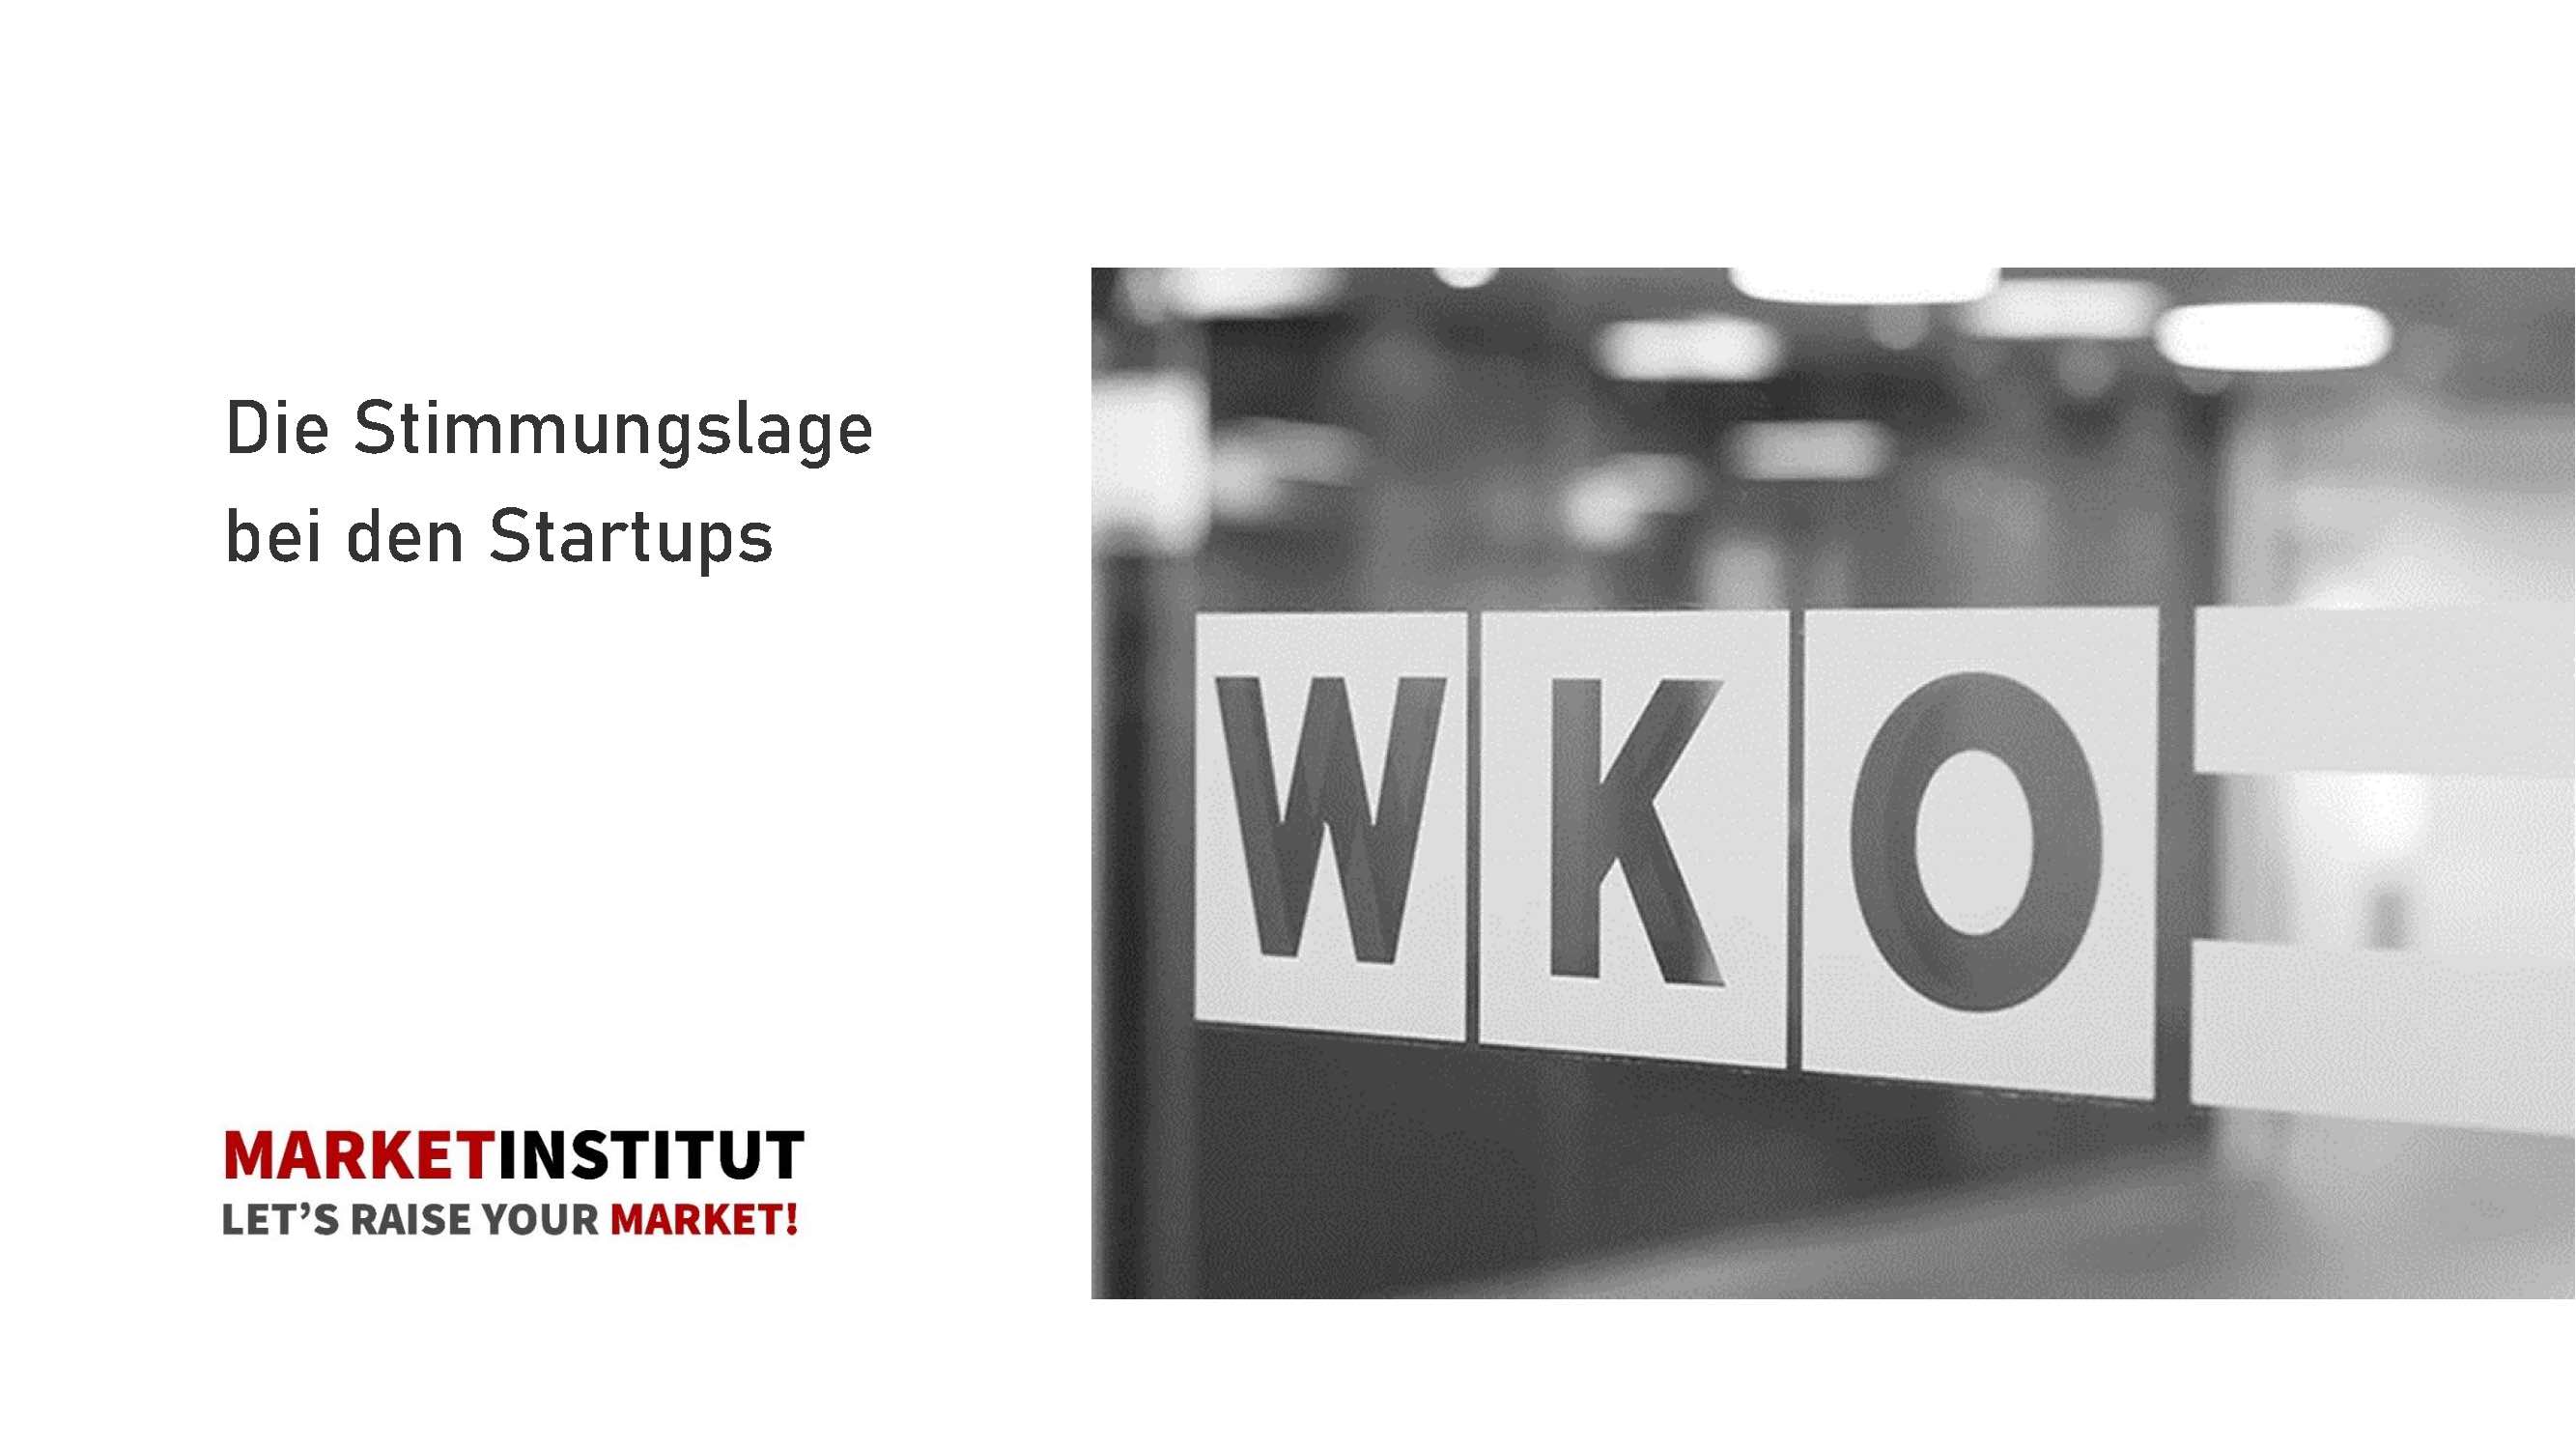 WKO-Startup Initiative-Die-Stimmungslage-bei-Startups-Österreich-2020-Corona-market-Umfrage